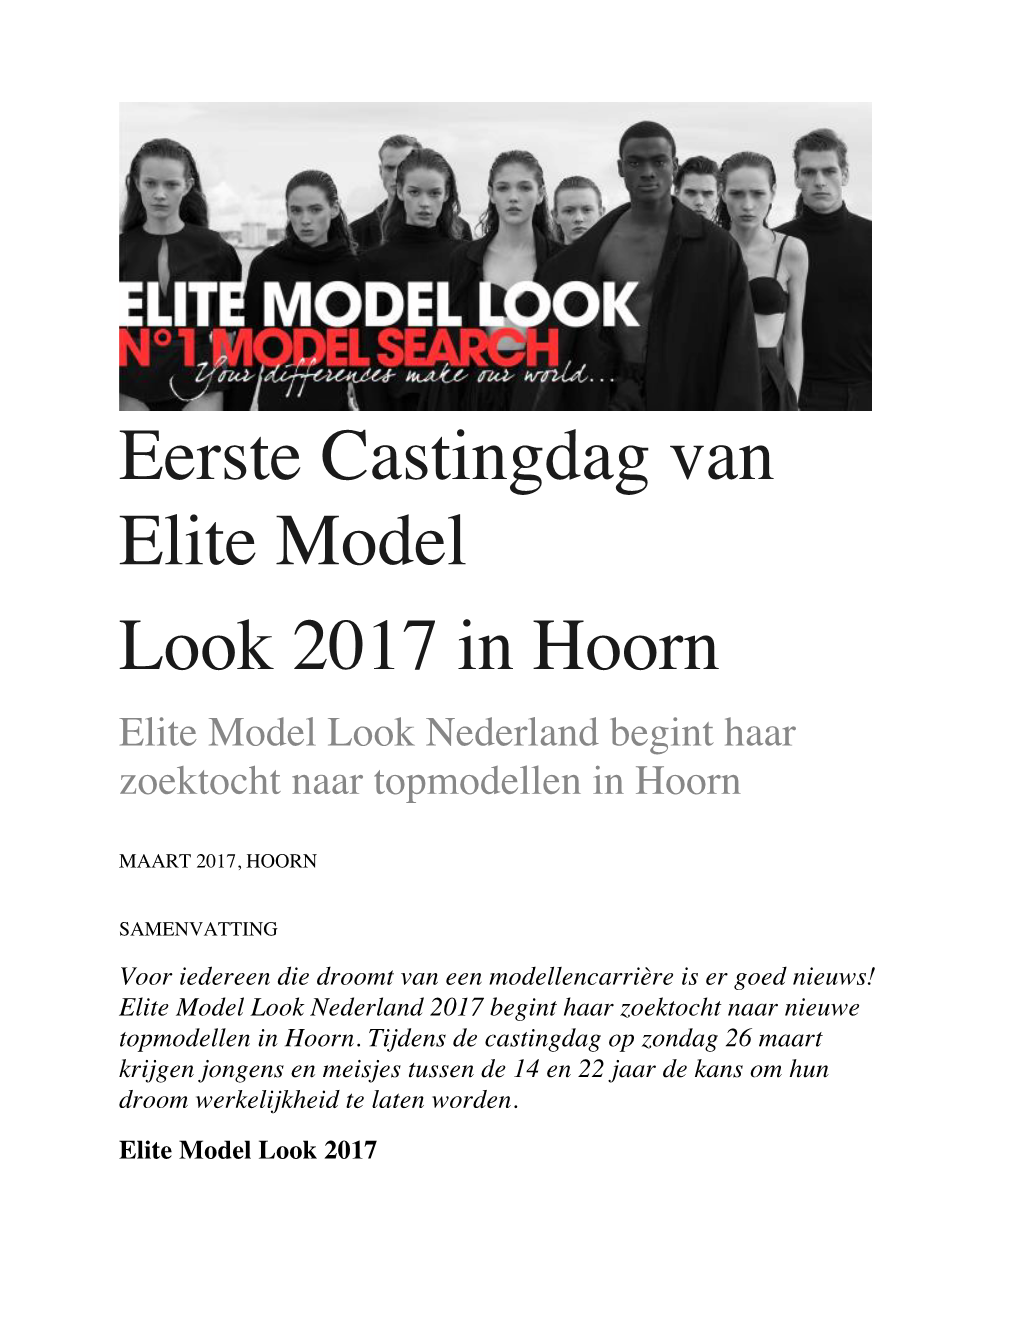 Eerste Castingdag Van Elite Model Look 2017 in Hoorn